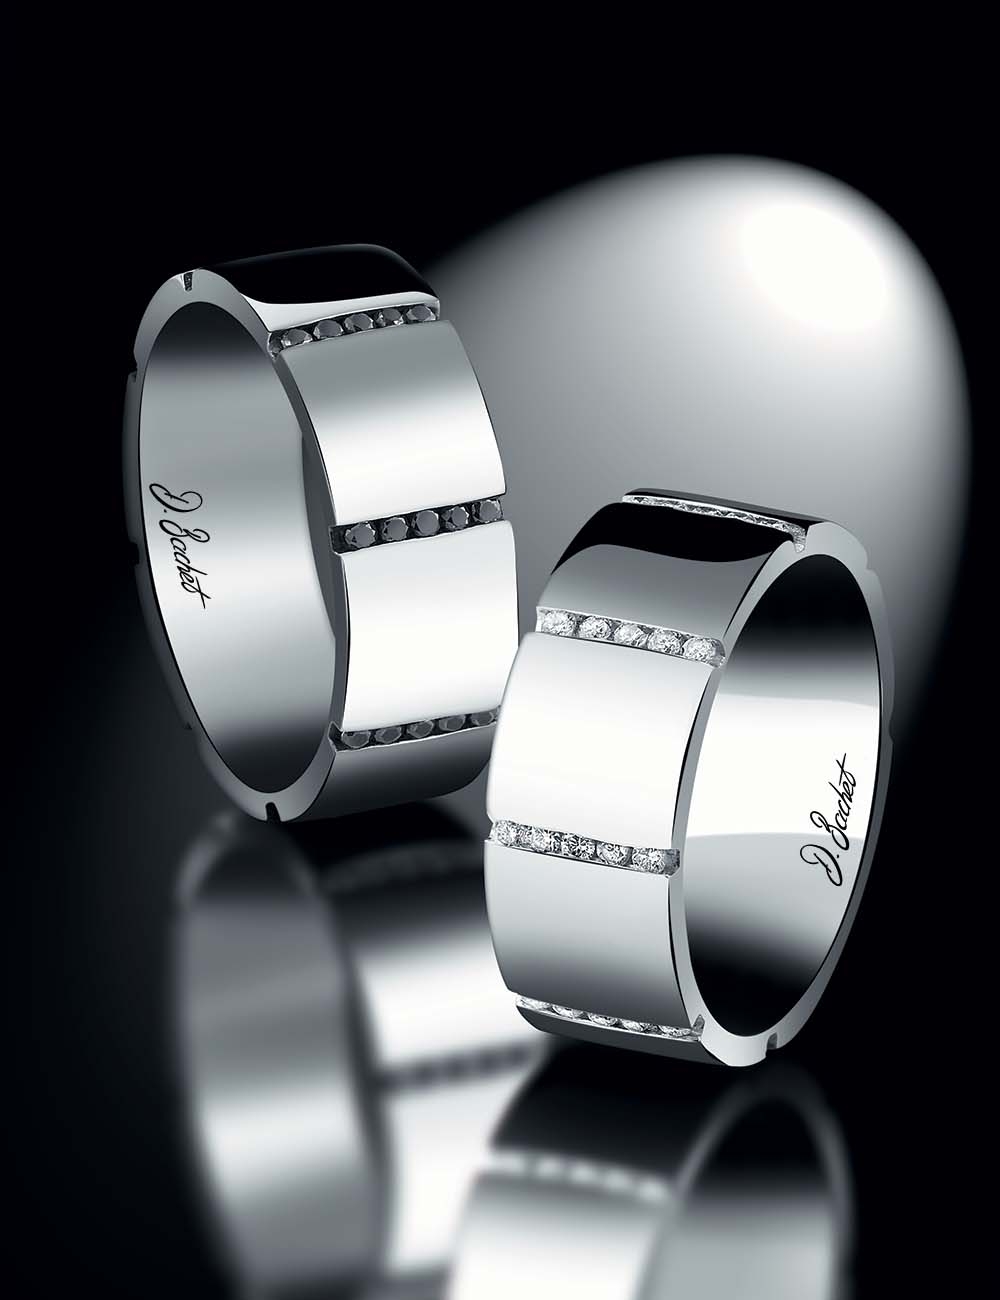 Alliance homme luxe en platine, 7,5 mm de largeur, diamants noirs, design audacieux et graphique, confortable.